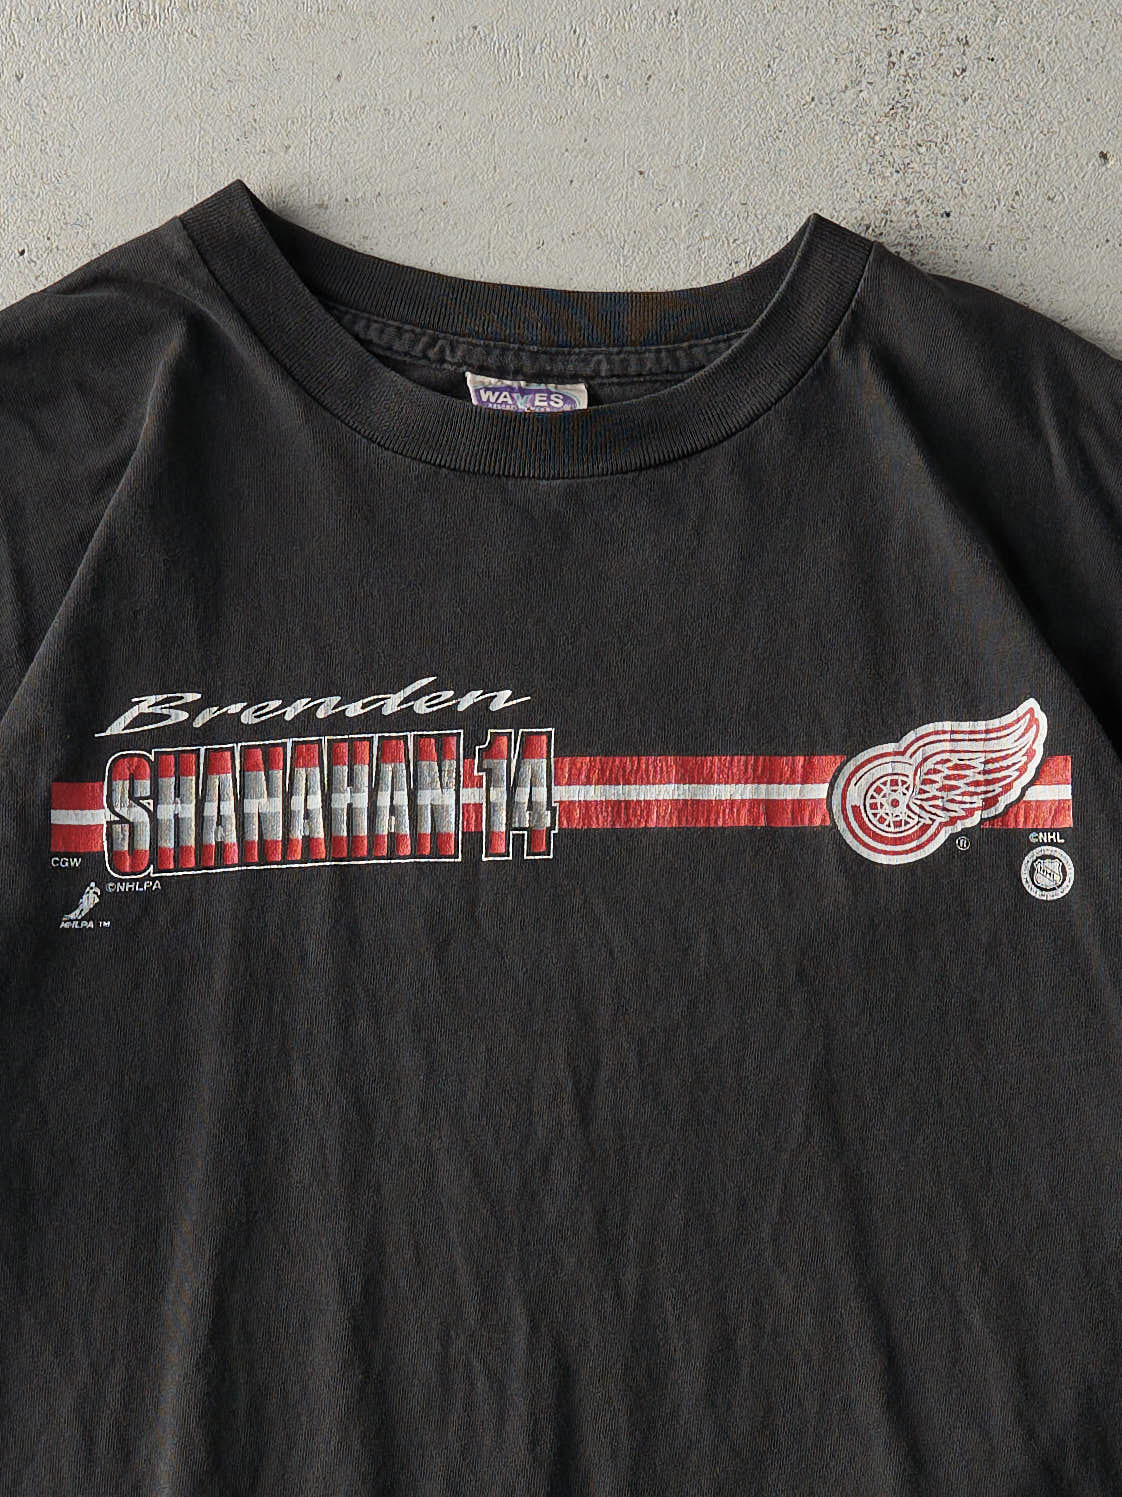 Vintage 90s Black Detroit Red Wings Brenden Shanahan #14 Tee (M/L)